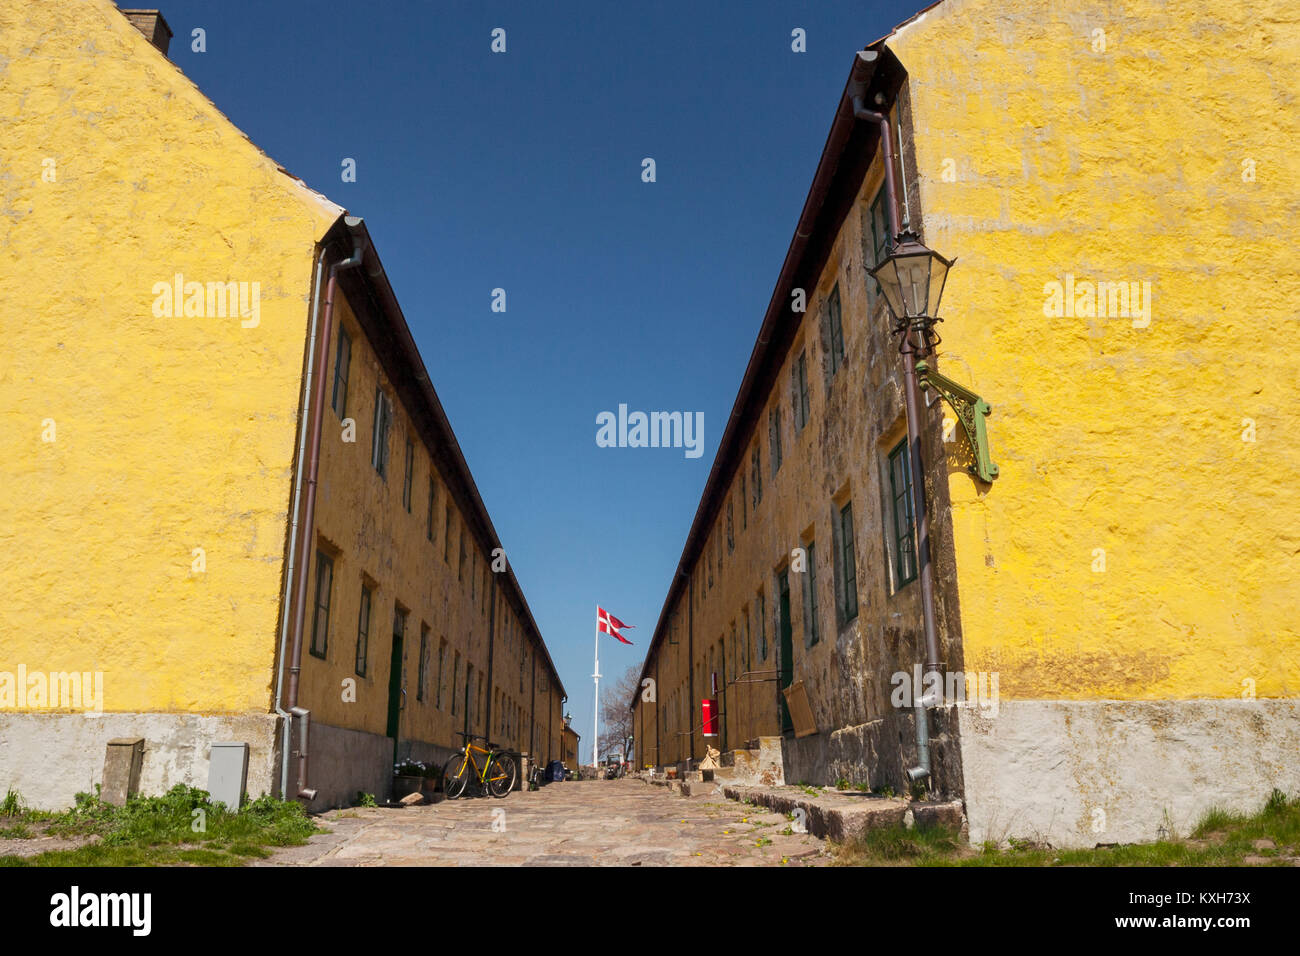 Yellow residential buildings and The Street (Gaden) on Christiansø, Ertholmene, Bornholm, Denmark Stock Photo